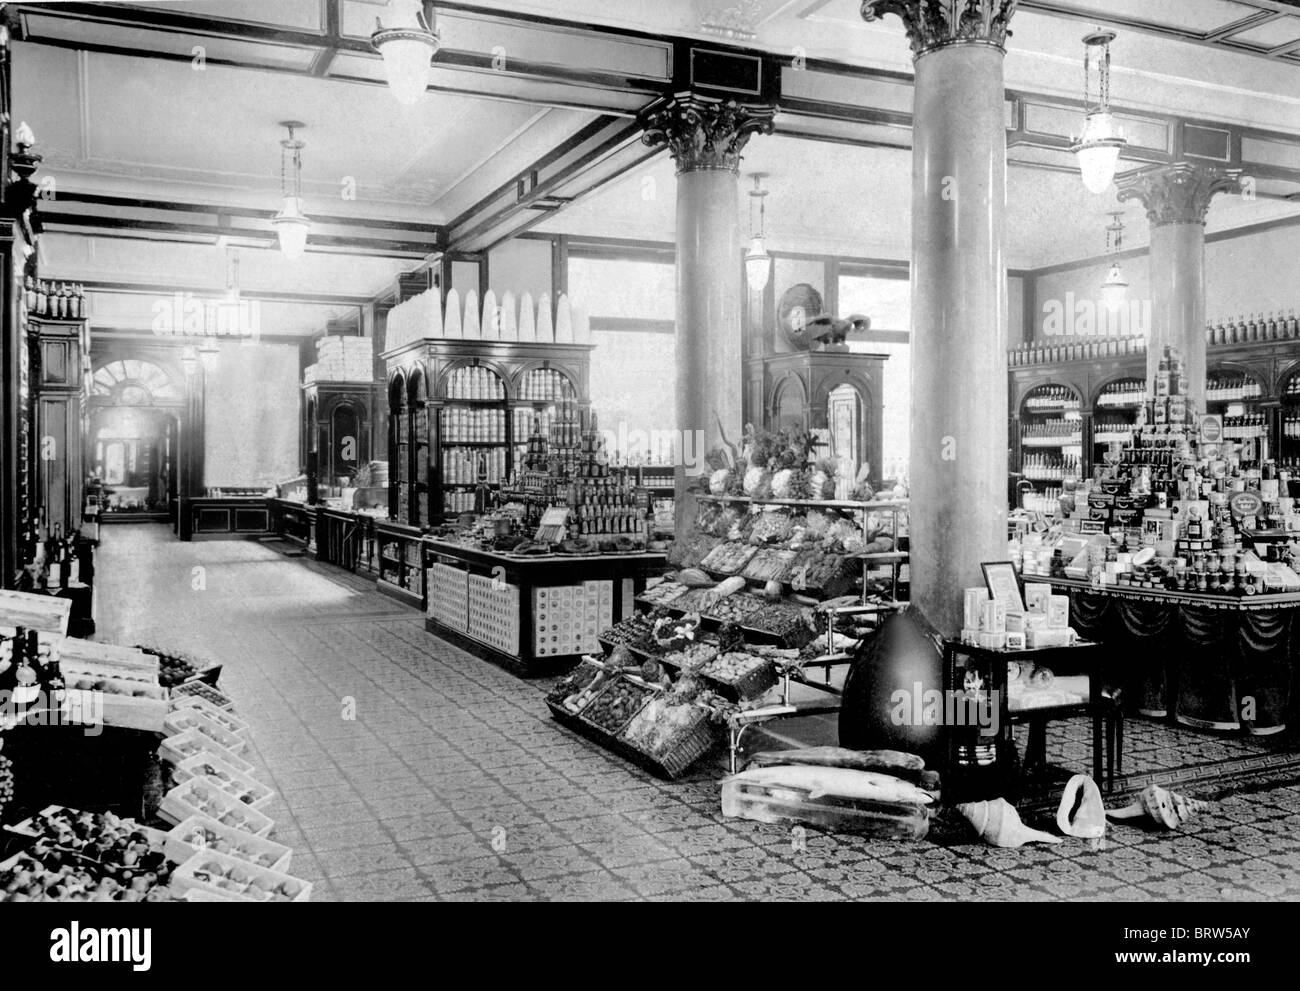 Supermercado, imagen histórica, ca. 1912 Foto de stock